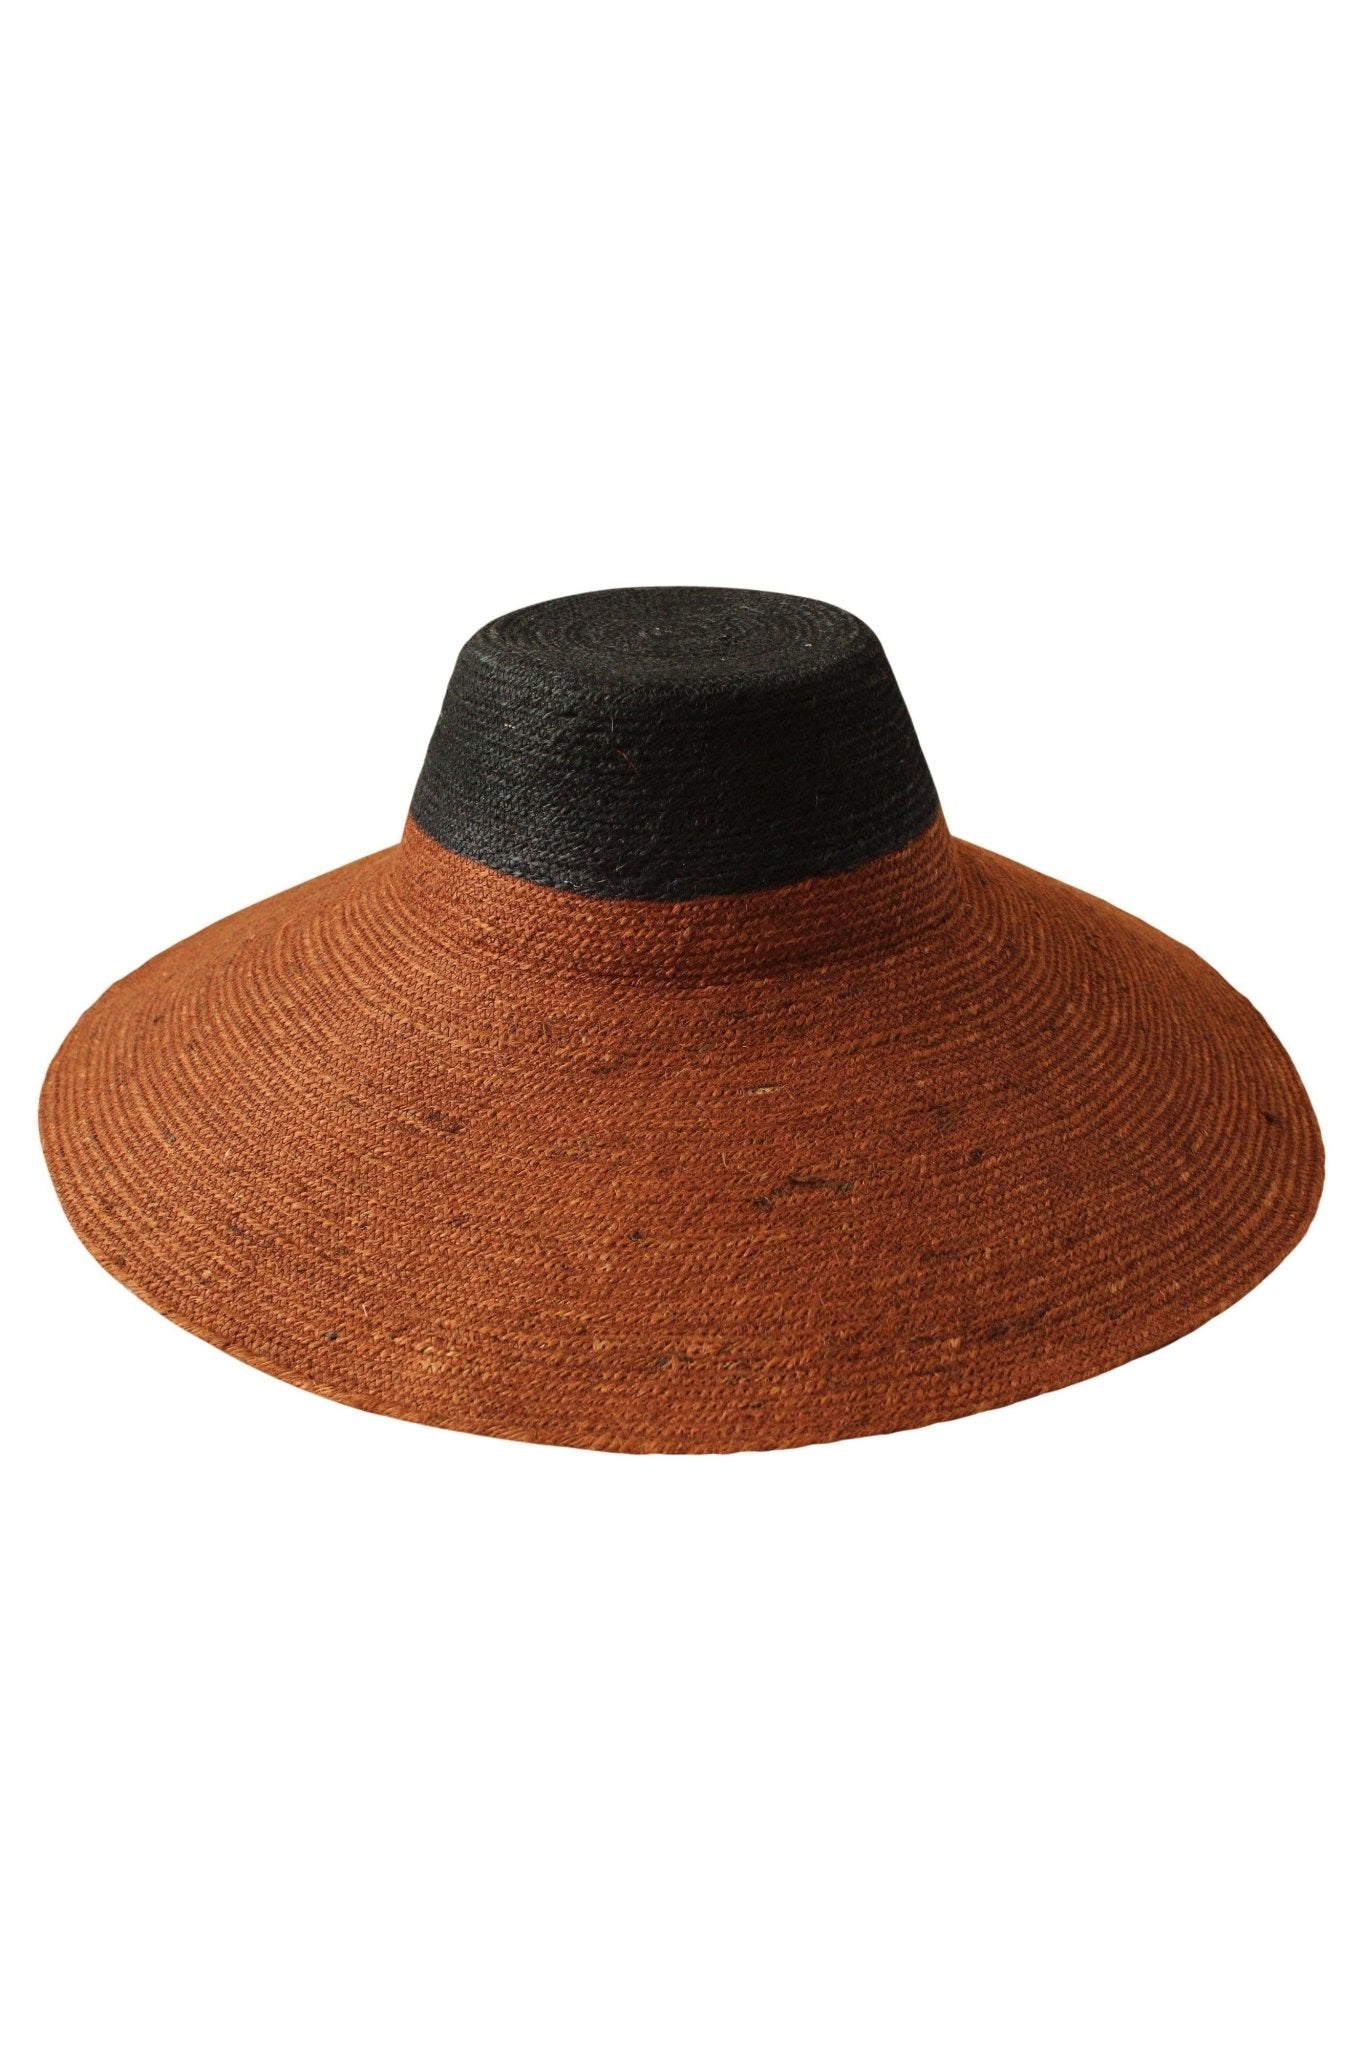 RIRI DUO Jute Straw Hat, in Burnt Sienna & Black - Mack & Harvie